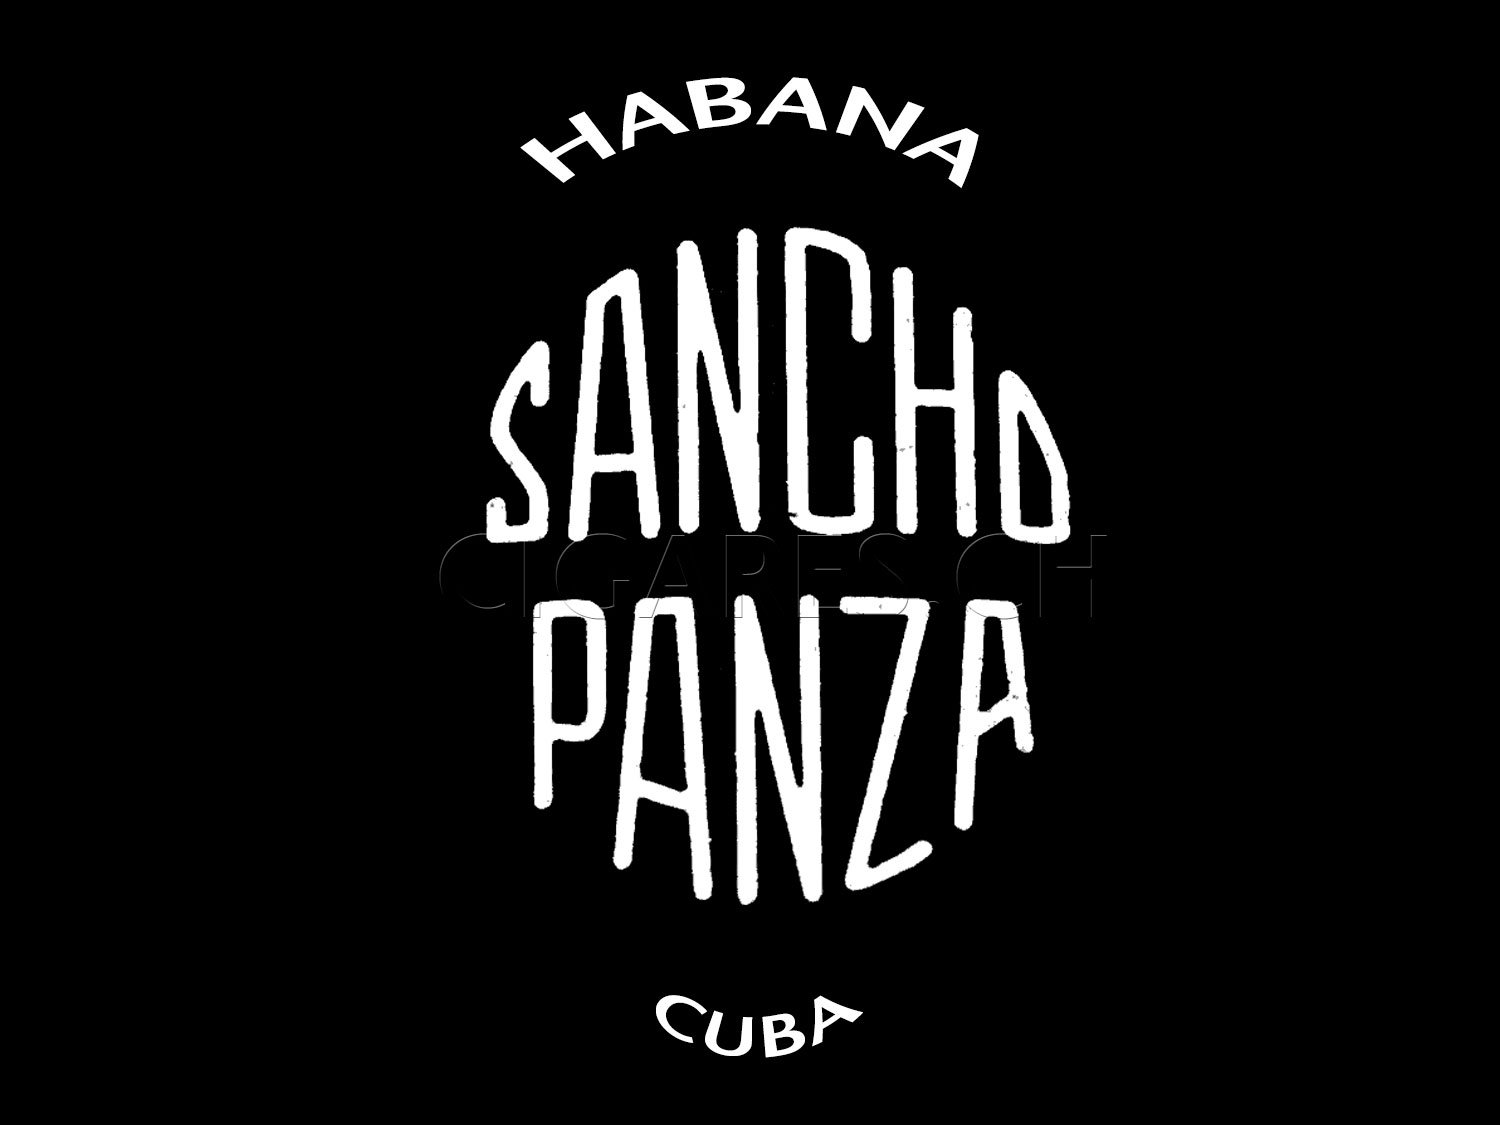 Sancho Panza logo